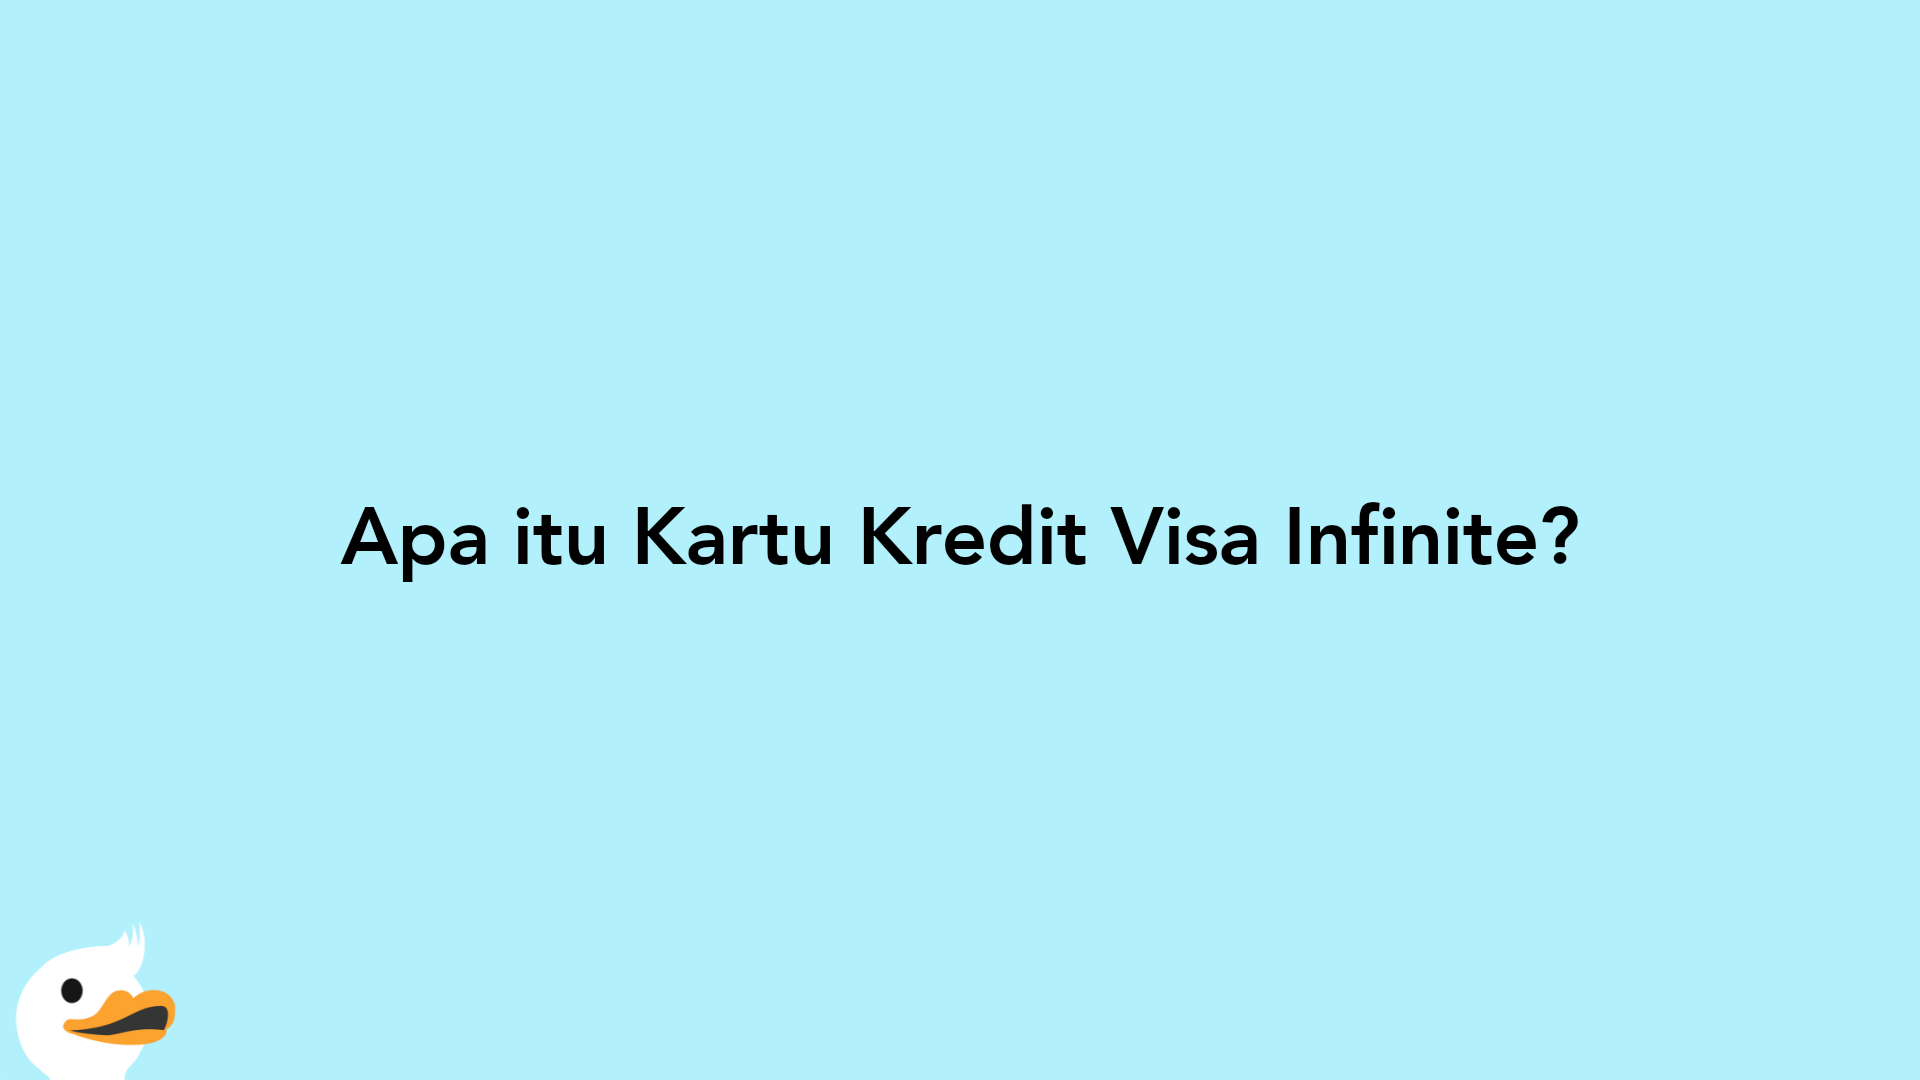 Apa itu Kartu Kredit Visa Infinite?